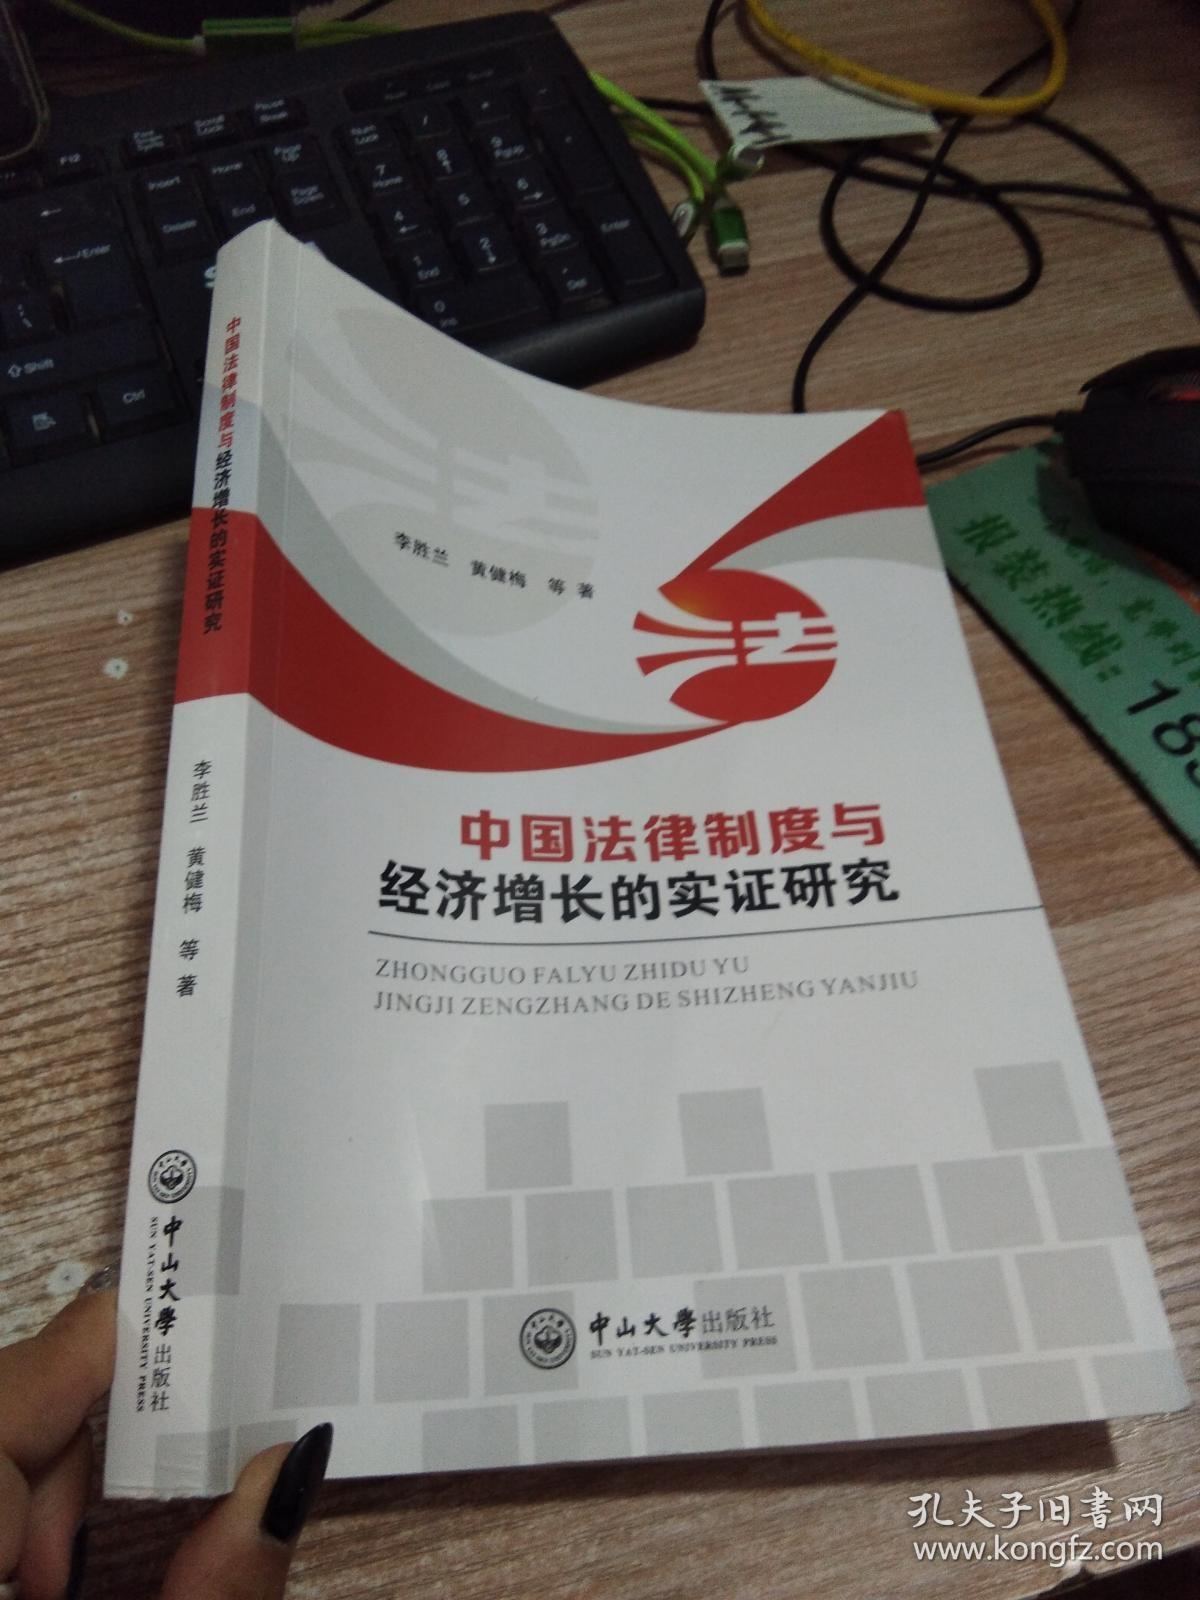 中国法律制度与经济增长的实证研究